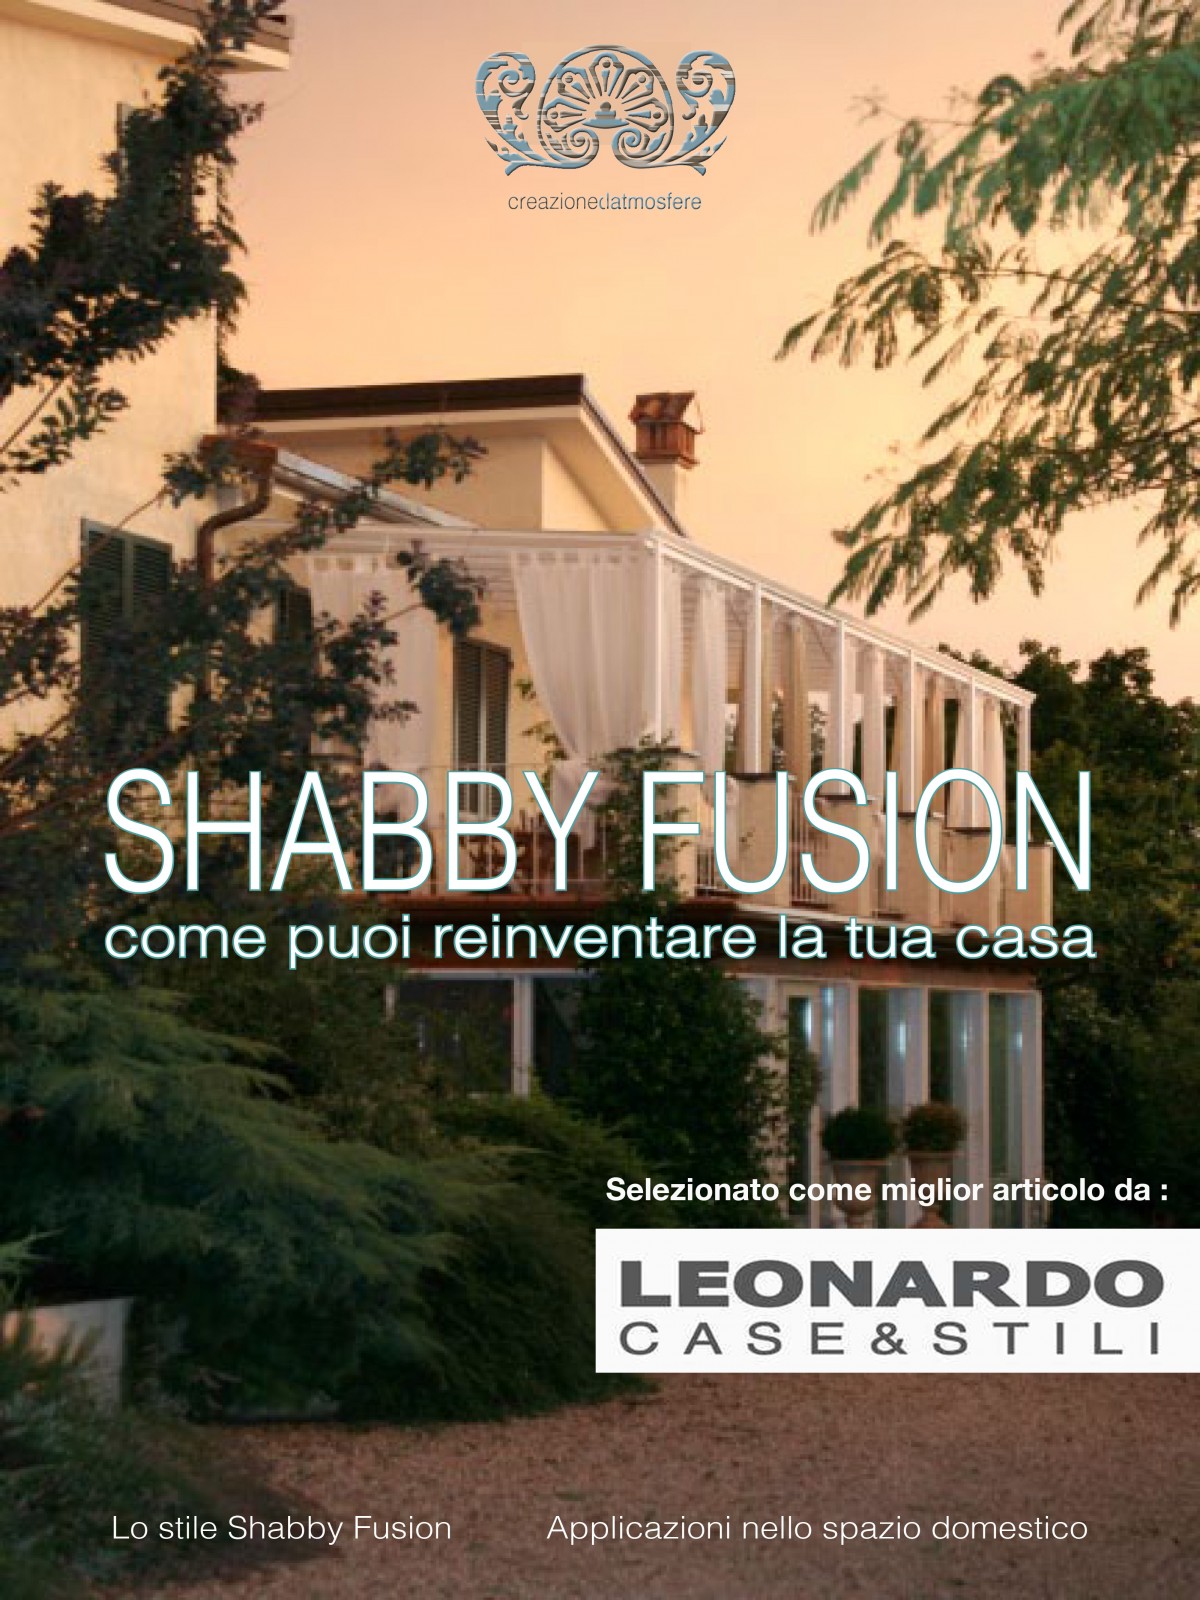 SHABBY FUSION copertina logo leonardo